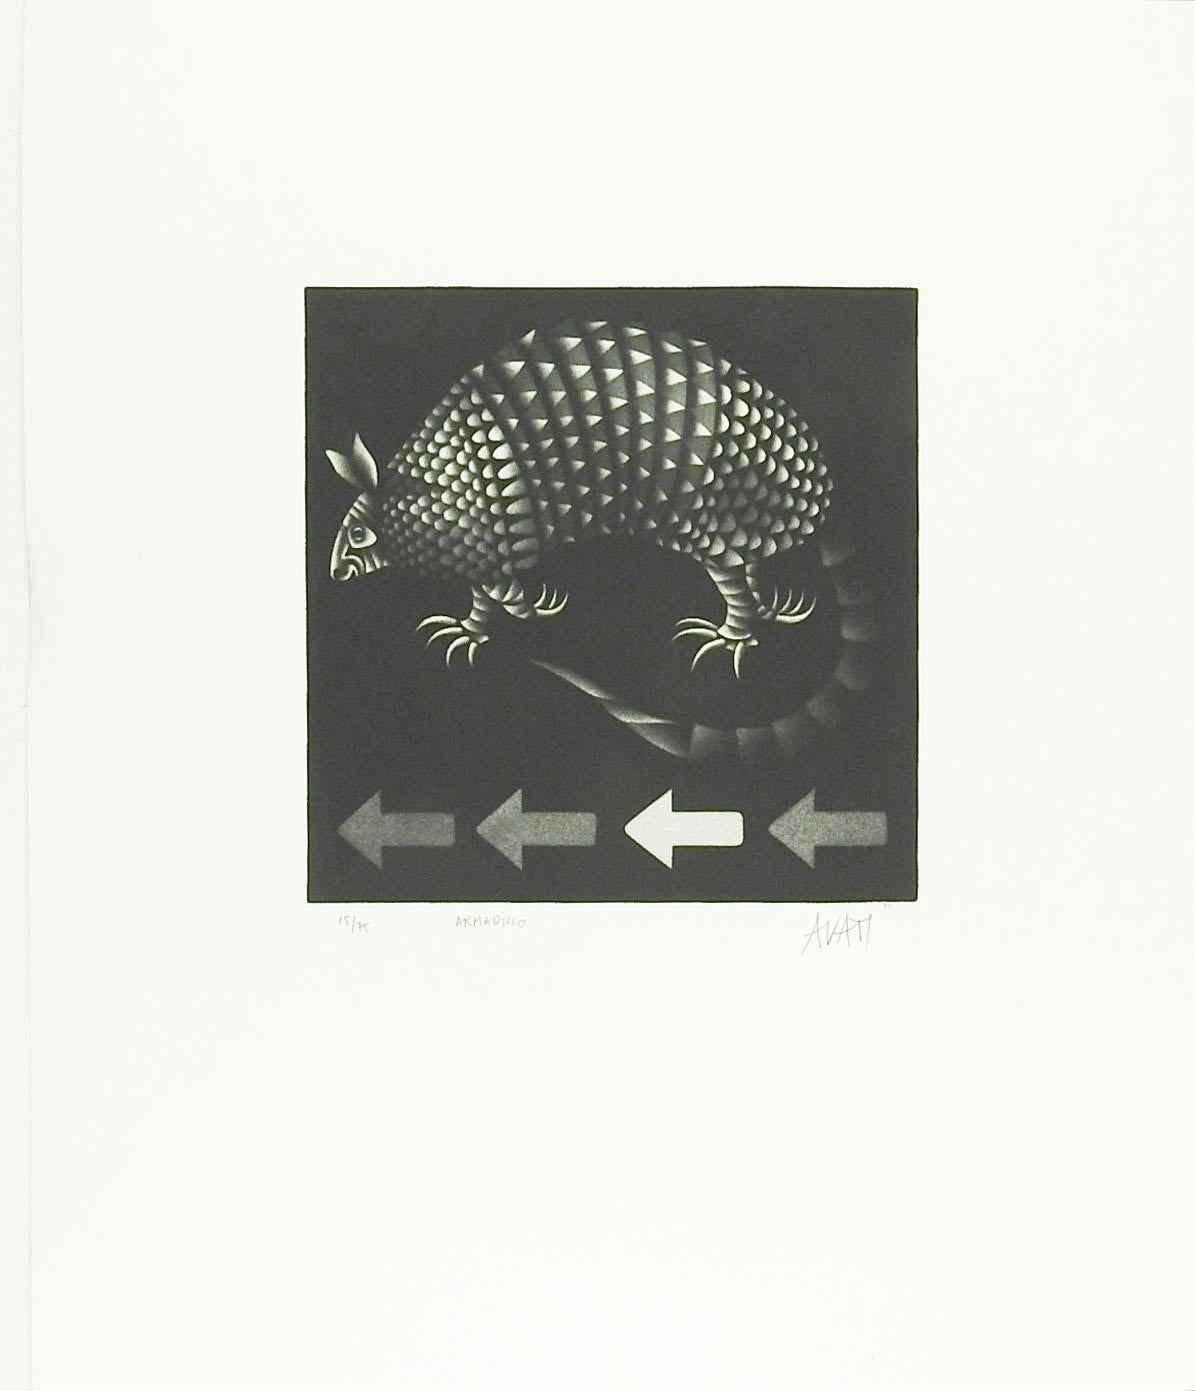 Circa 1960's Mezzotint sur papier par Mario Avati (1921-2009) France.  Signé, numéroté 15/75 et titré Armadillo au crayon dans la marge inférieure.  Non encadré, taille de l'image 8.5